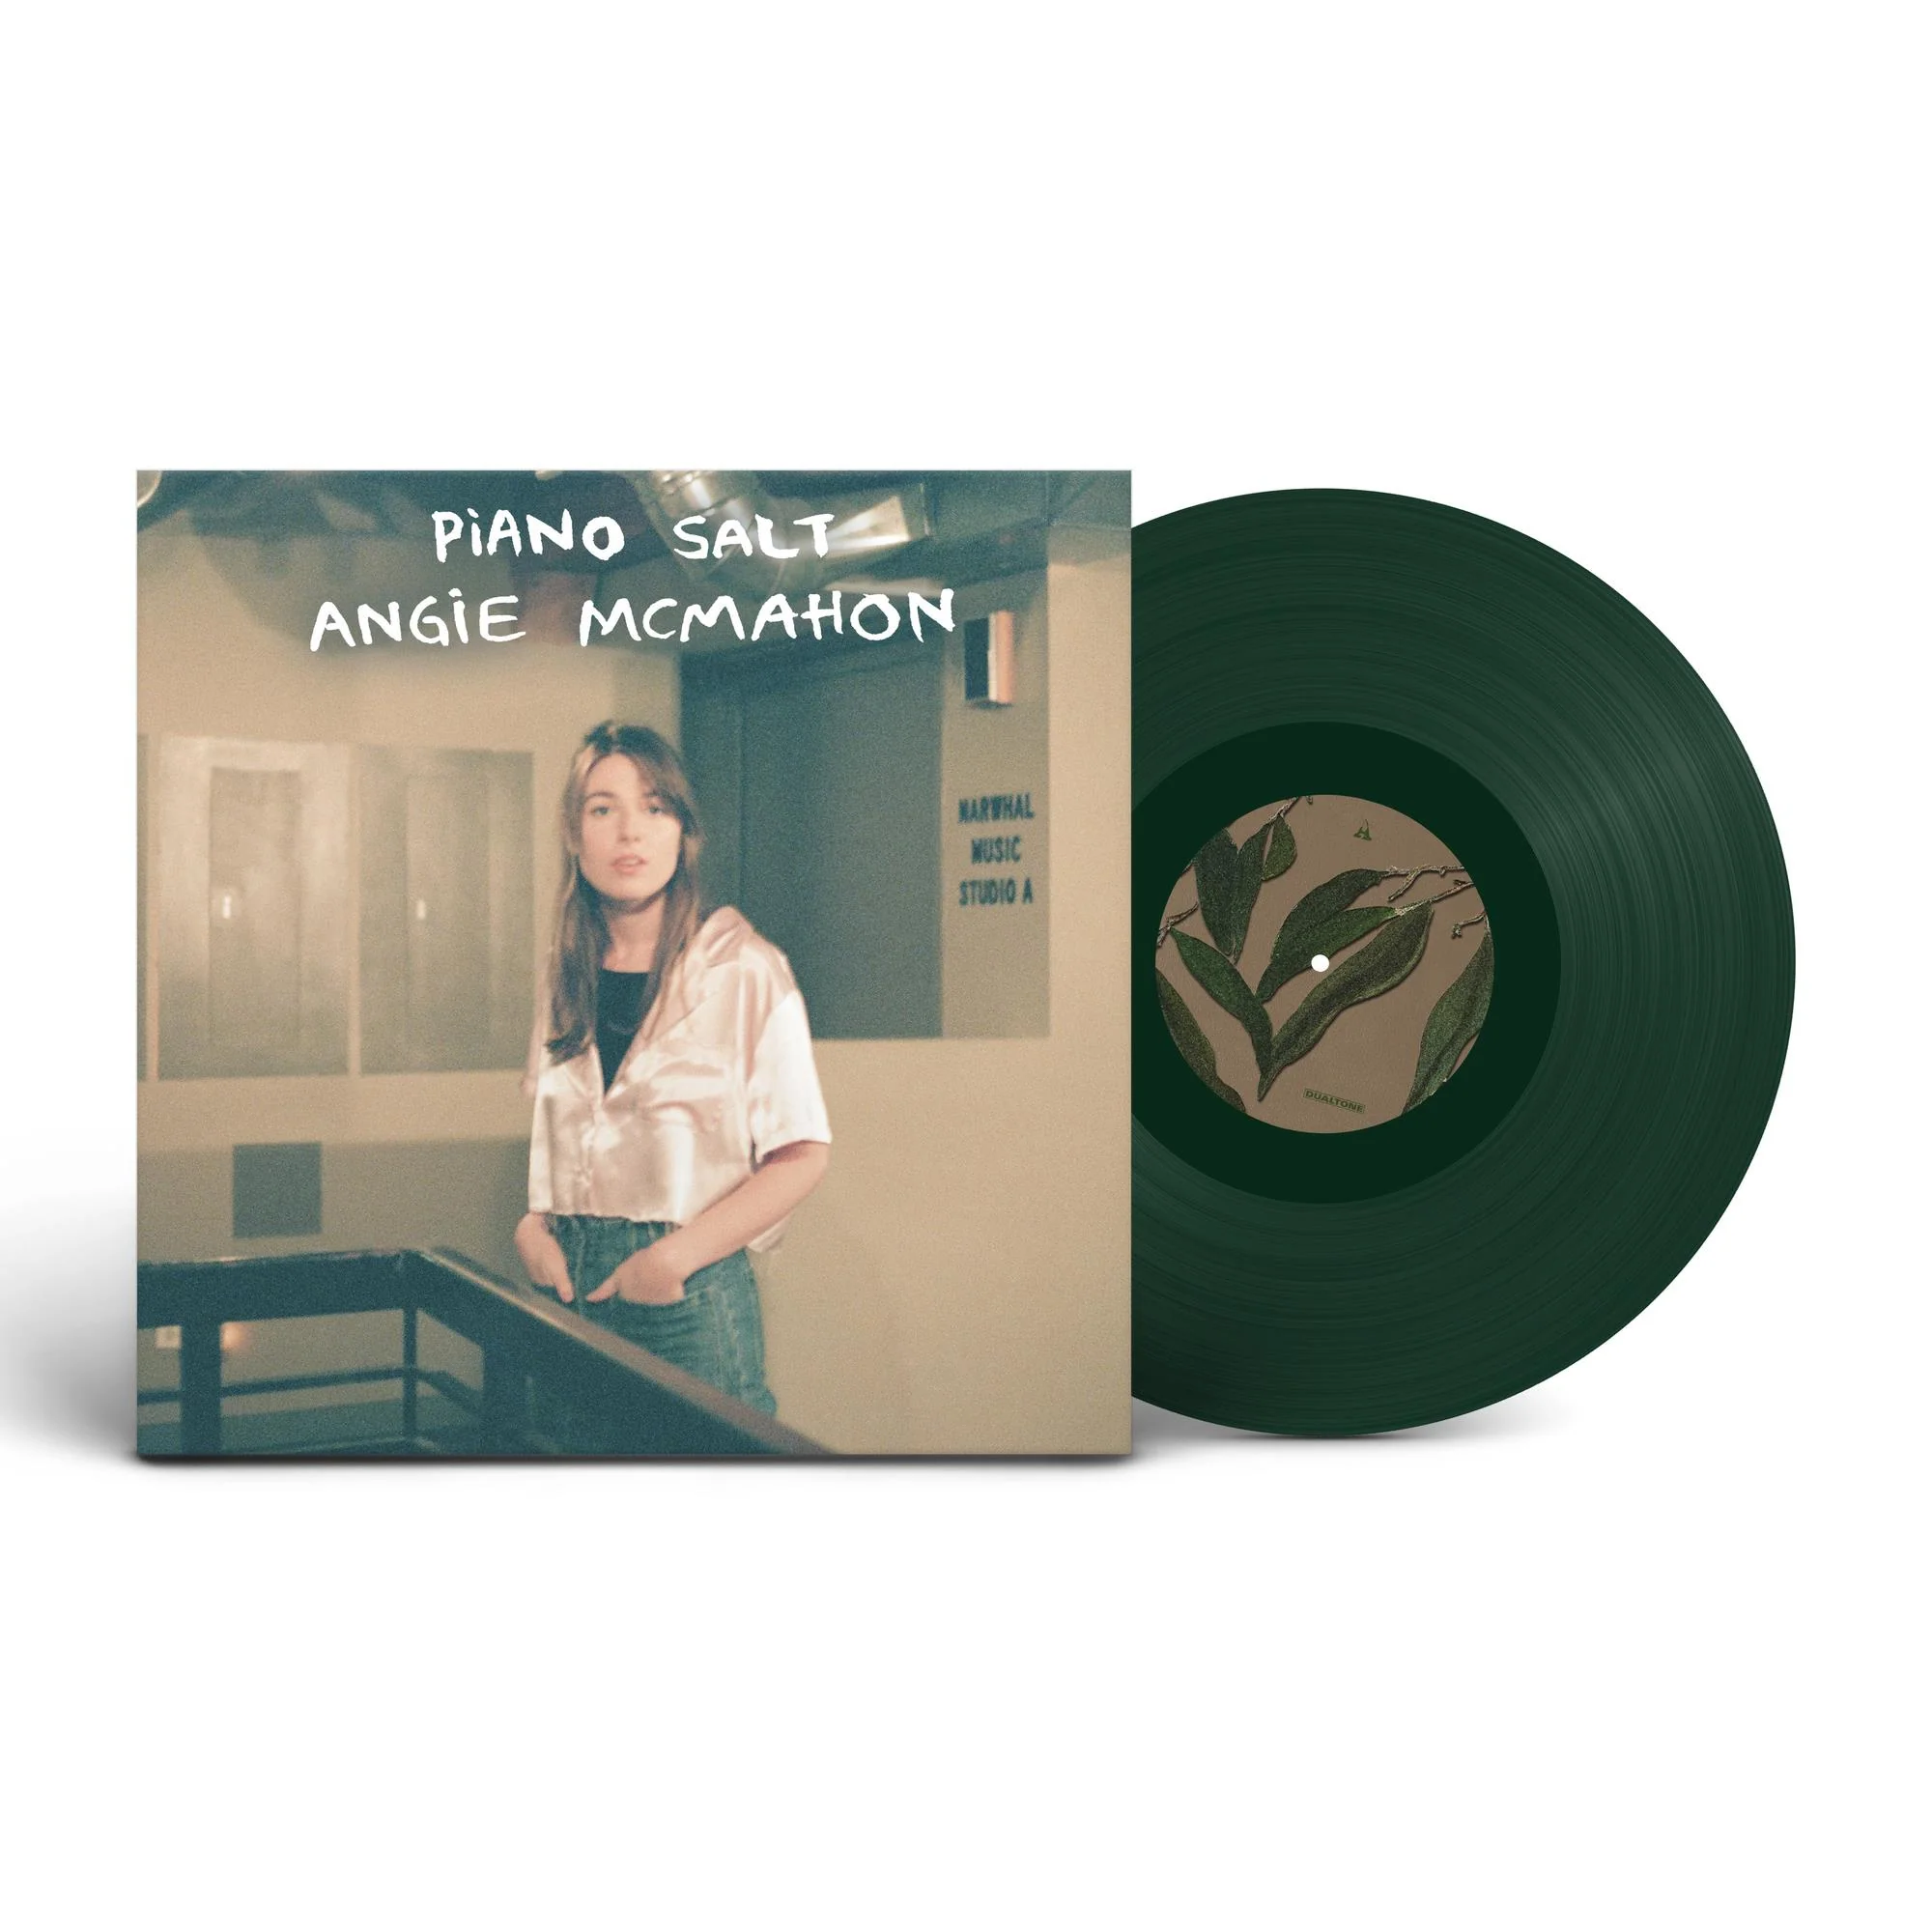 ANGIE MCMAHON - Piano Salt EP Vinyl